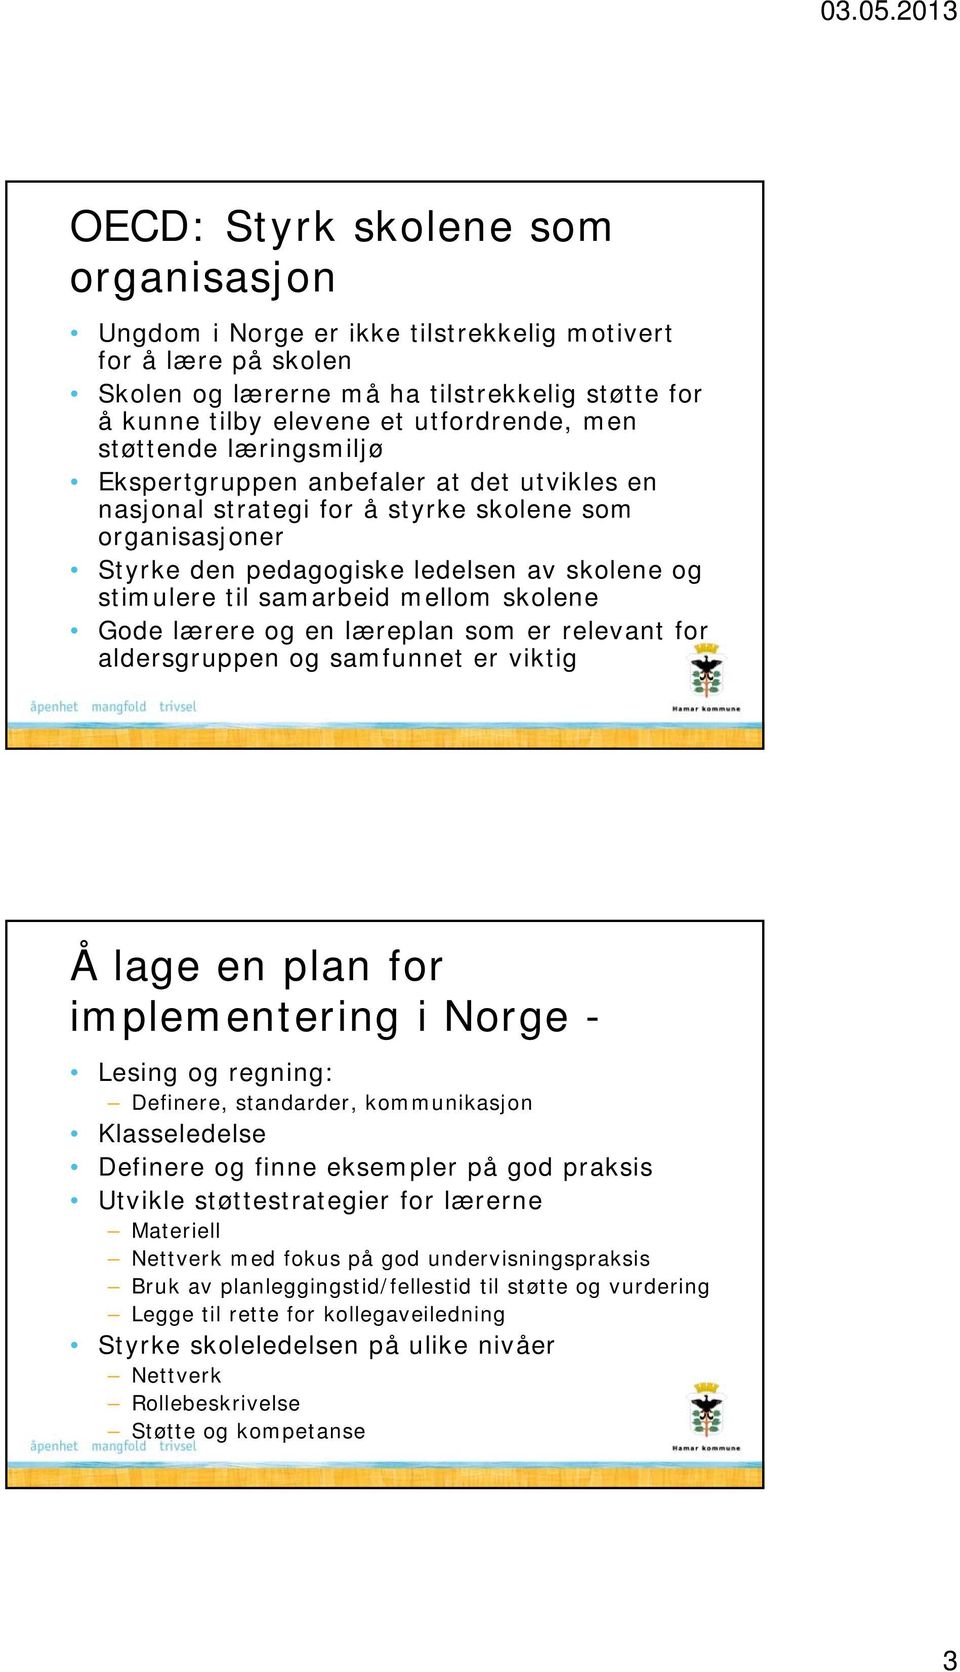 mellom skolene Gode lærere og en læreplan som er relevant for aldersgruppen og samfunnet er viktig Å lage en plan for implementering i Norge - Lesing og regning: Definere, standarder, kommunikasjon